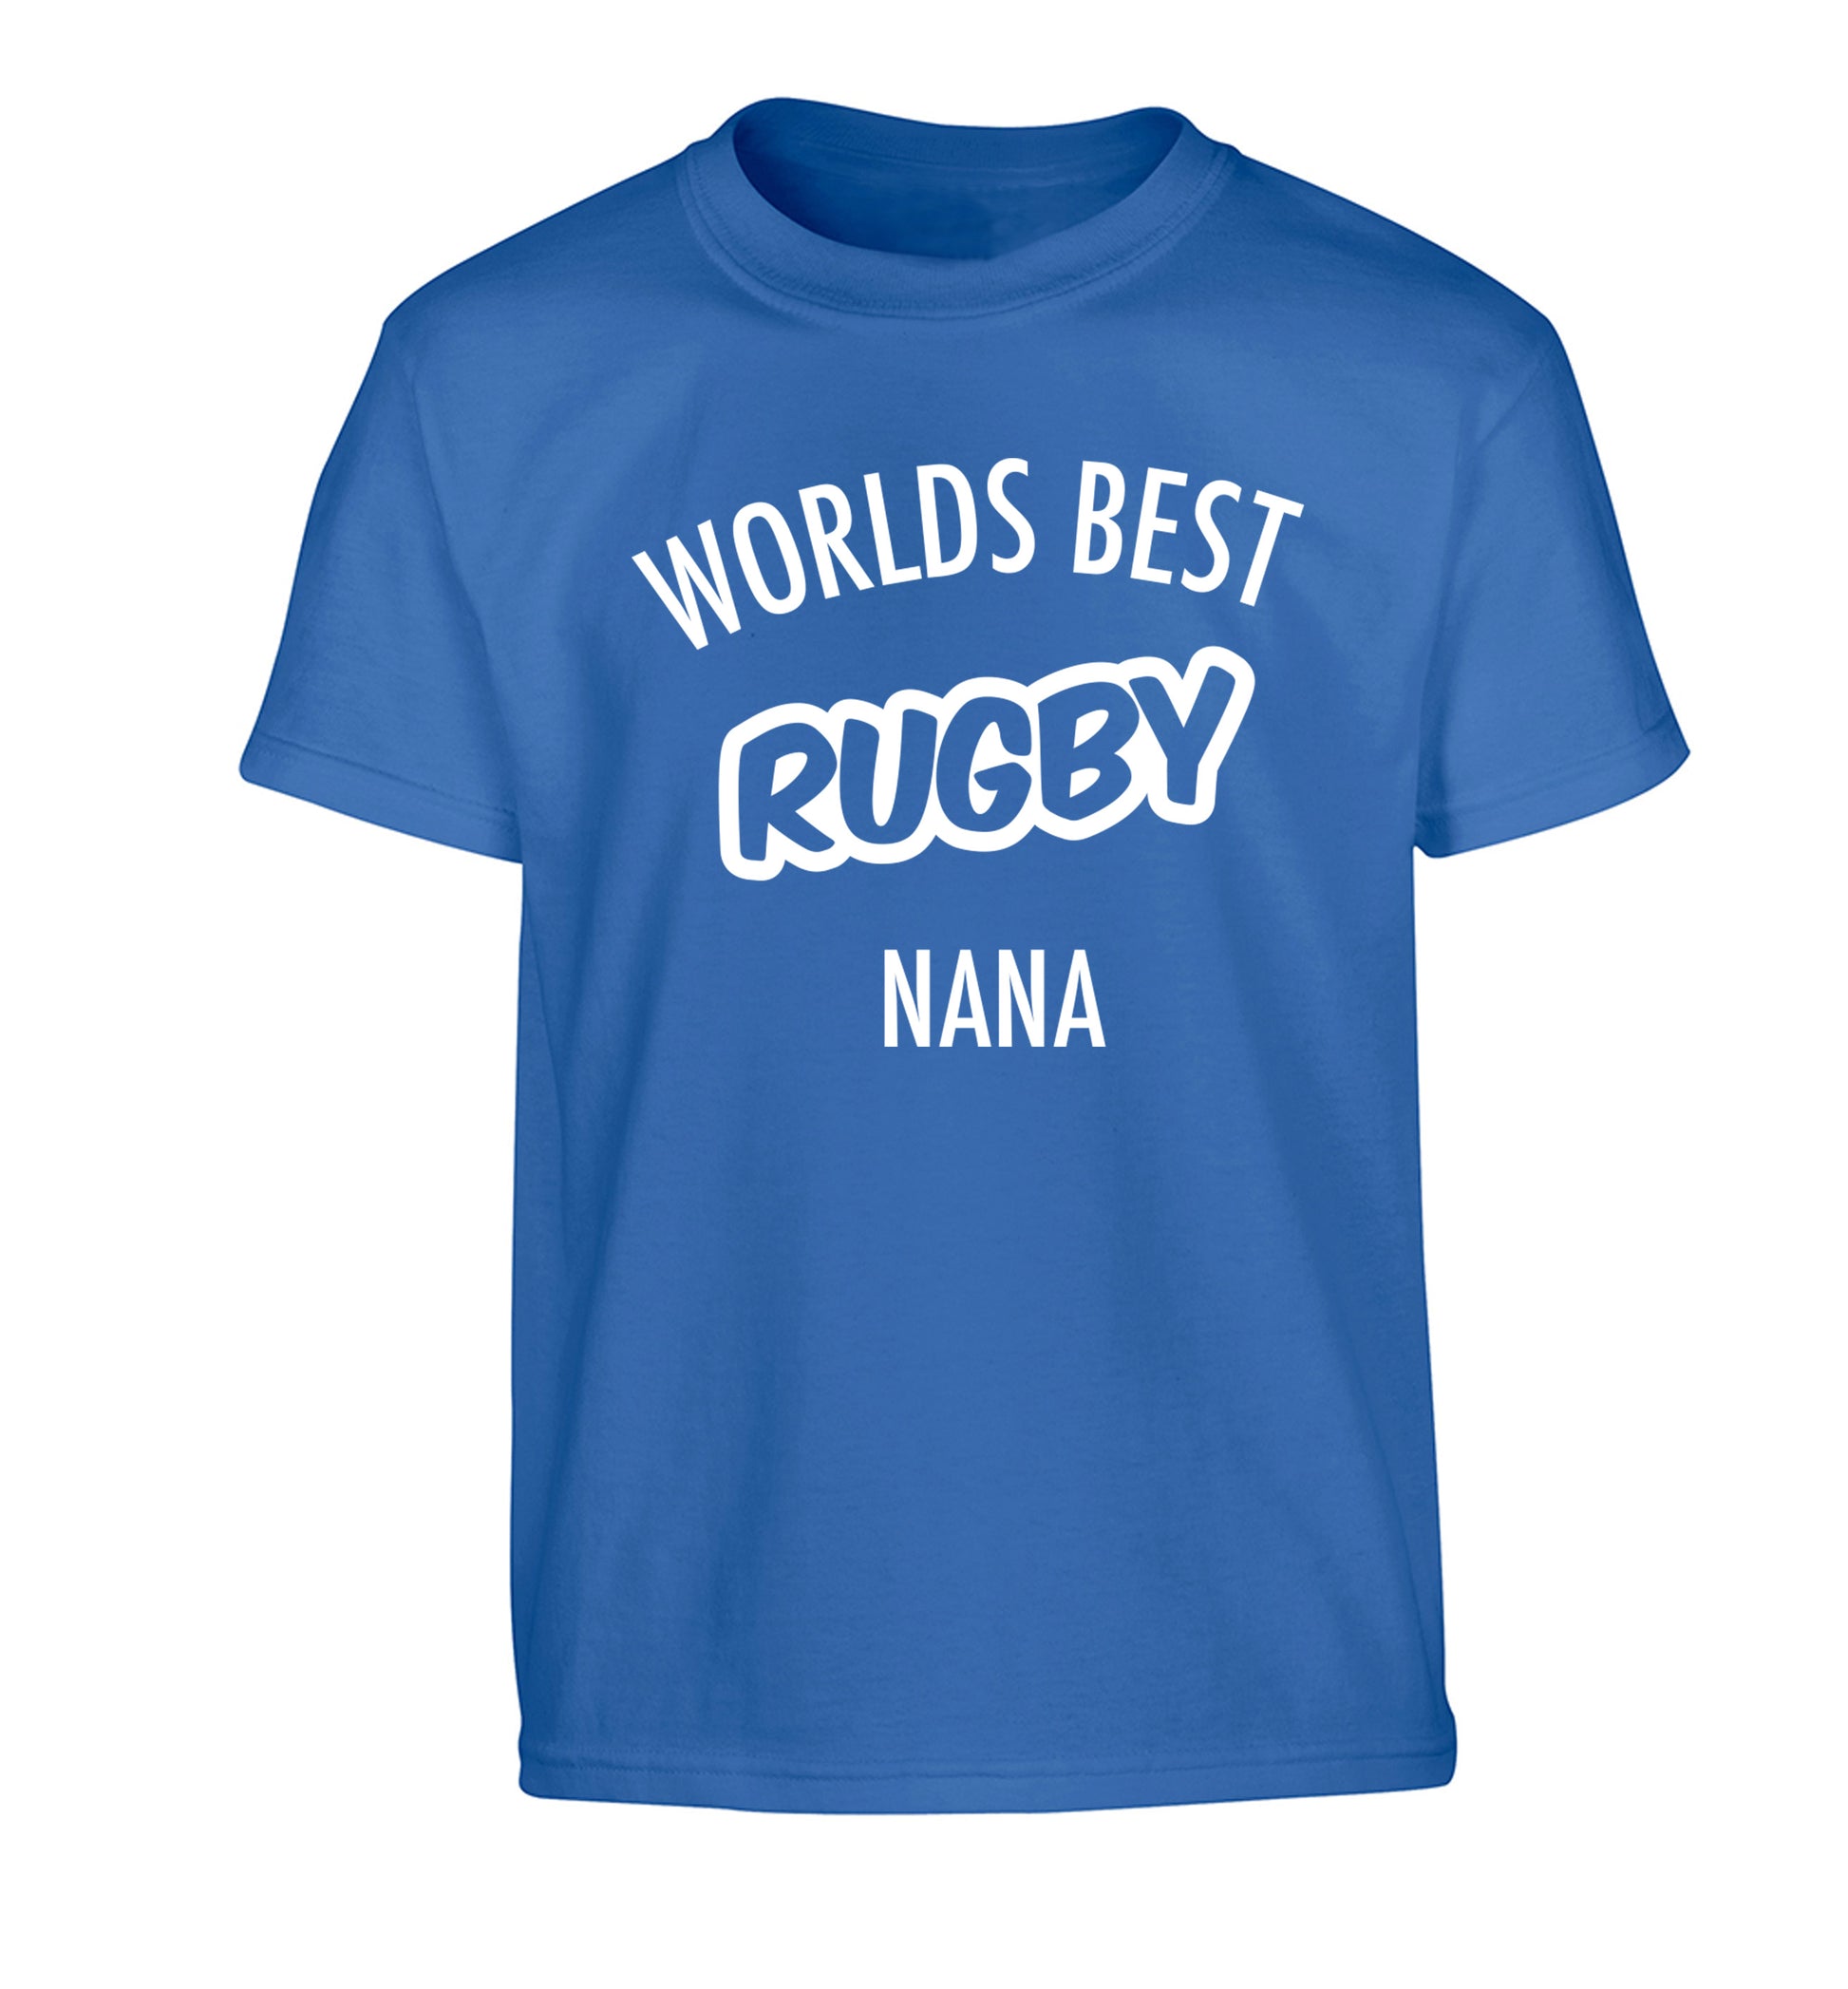 Worlds Best Rugby Grandma Children's blue Tshirt 12-13 Years